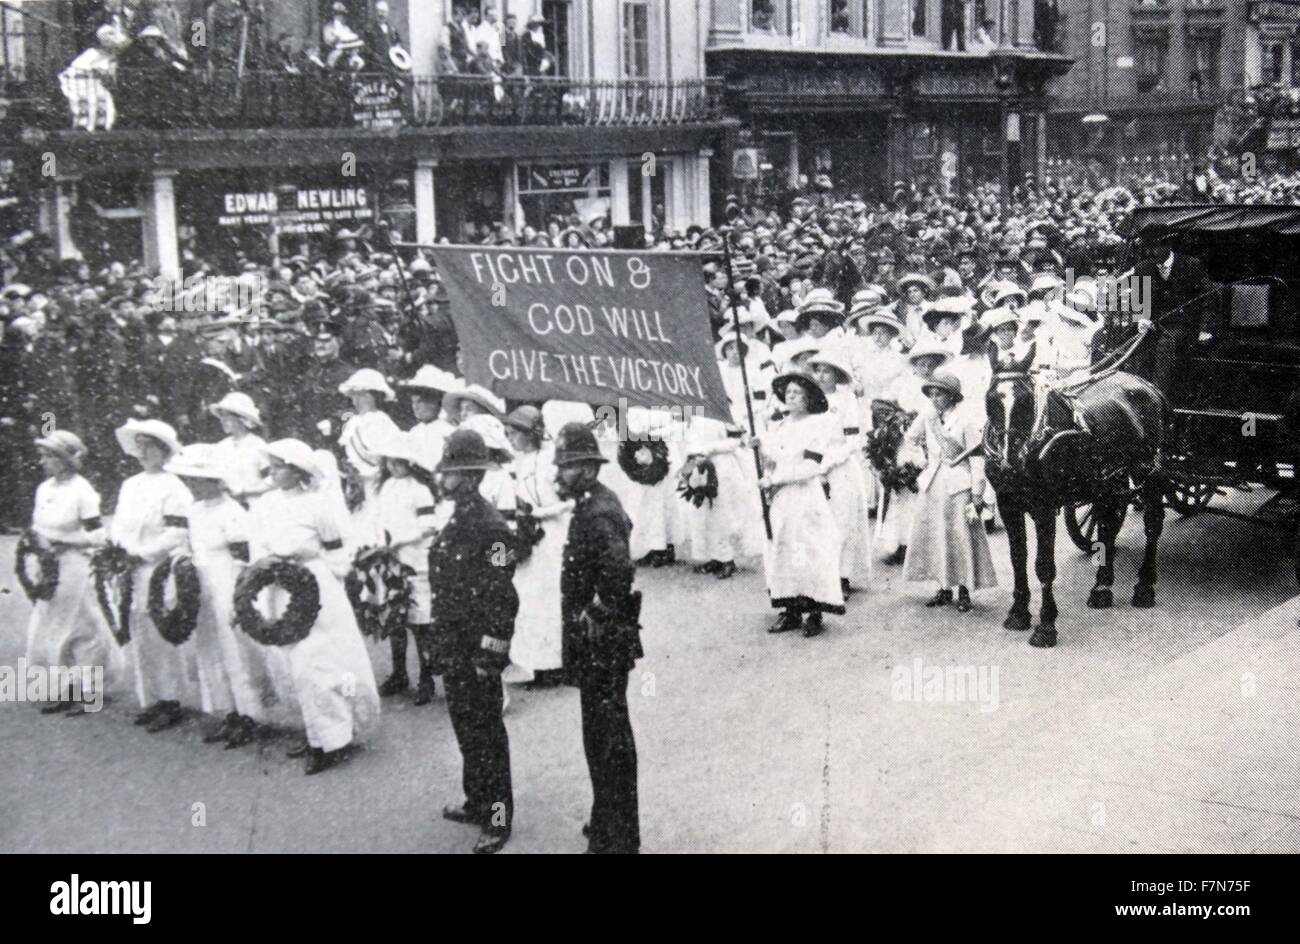 Beim Derby im Juni 1913 eine Frauenrechtlerin namens Emily Davison warf sich vor des Königs Pferd am Tattenham Corner und starb an den Verletzungen, die sie erhalten.  Ihr Begräbnis wurde anlässlich der Suffragetten Parade gemacht. Stockfoto